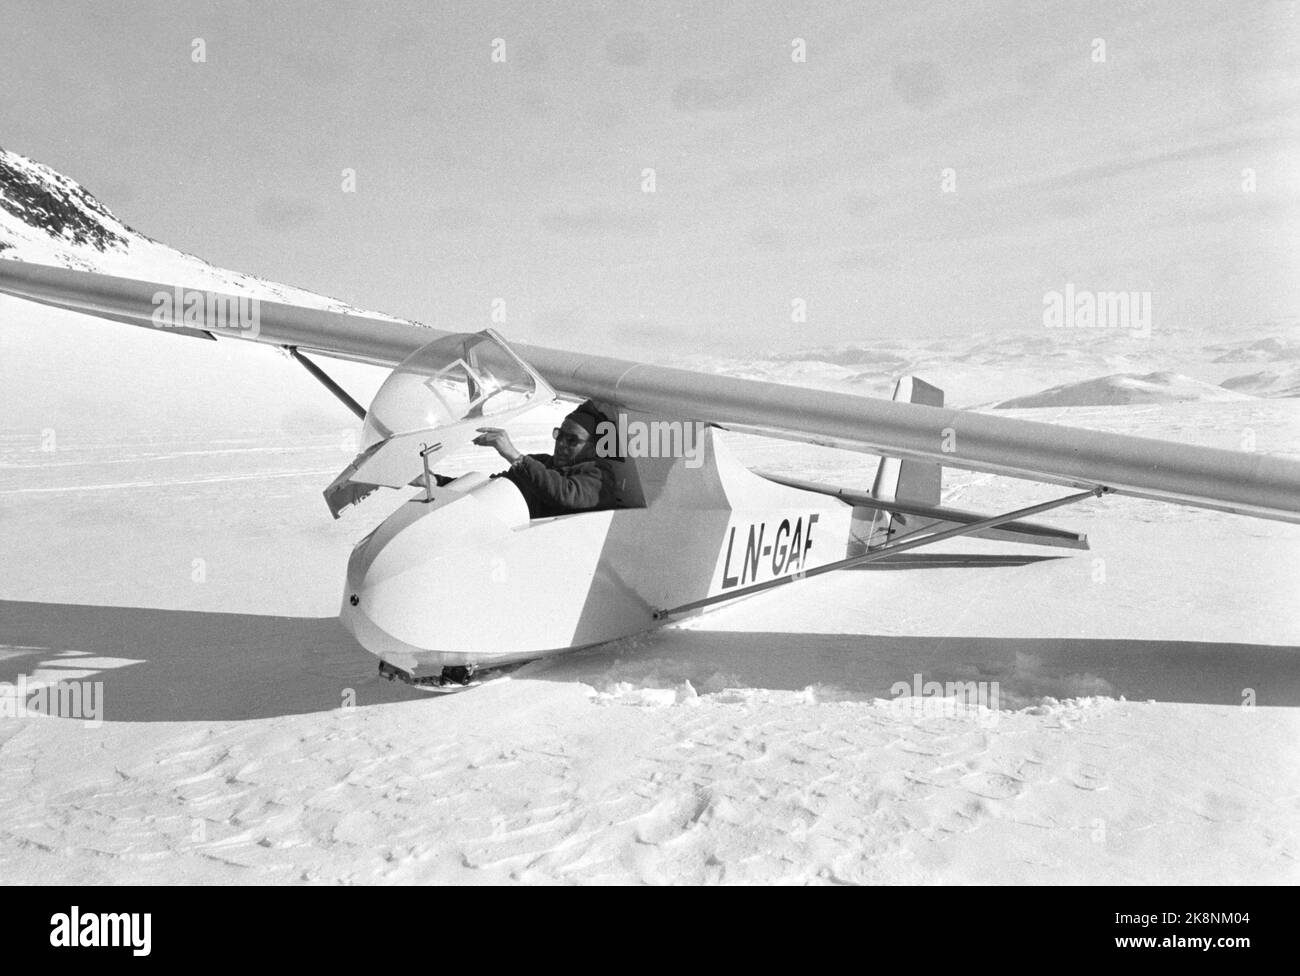 Eidsbugarden, Jotunheimen, 6. Mai 1961. Fünf Segelflugzeuge genießen sich in der Bergwelt. Zwei von ihnen landen auf dem Uranos-Gletscher, als die ersten Segelflugzeuge jemals auf einem Gletscher landeten. Als erster landet der dänische Möbelpolsterer Robert Nielsen aus Silkeborg. Der Norweger Bakkasserer, Bjarne Bergsund landet auf Platz 2. Ein Segelflugzeug wartet darauf, hochgezogen zu werden. Foto; Ivar Aaserud / NTB Stockfoto